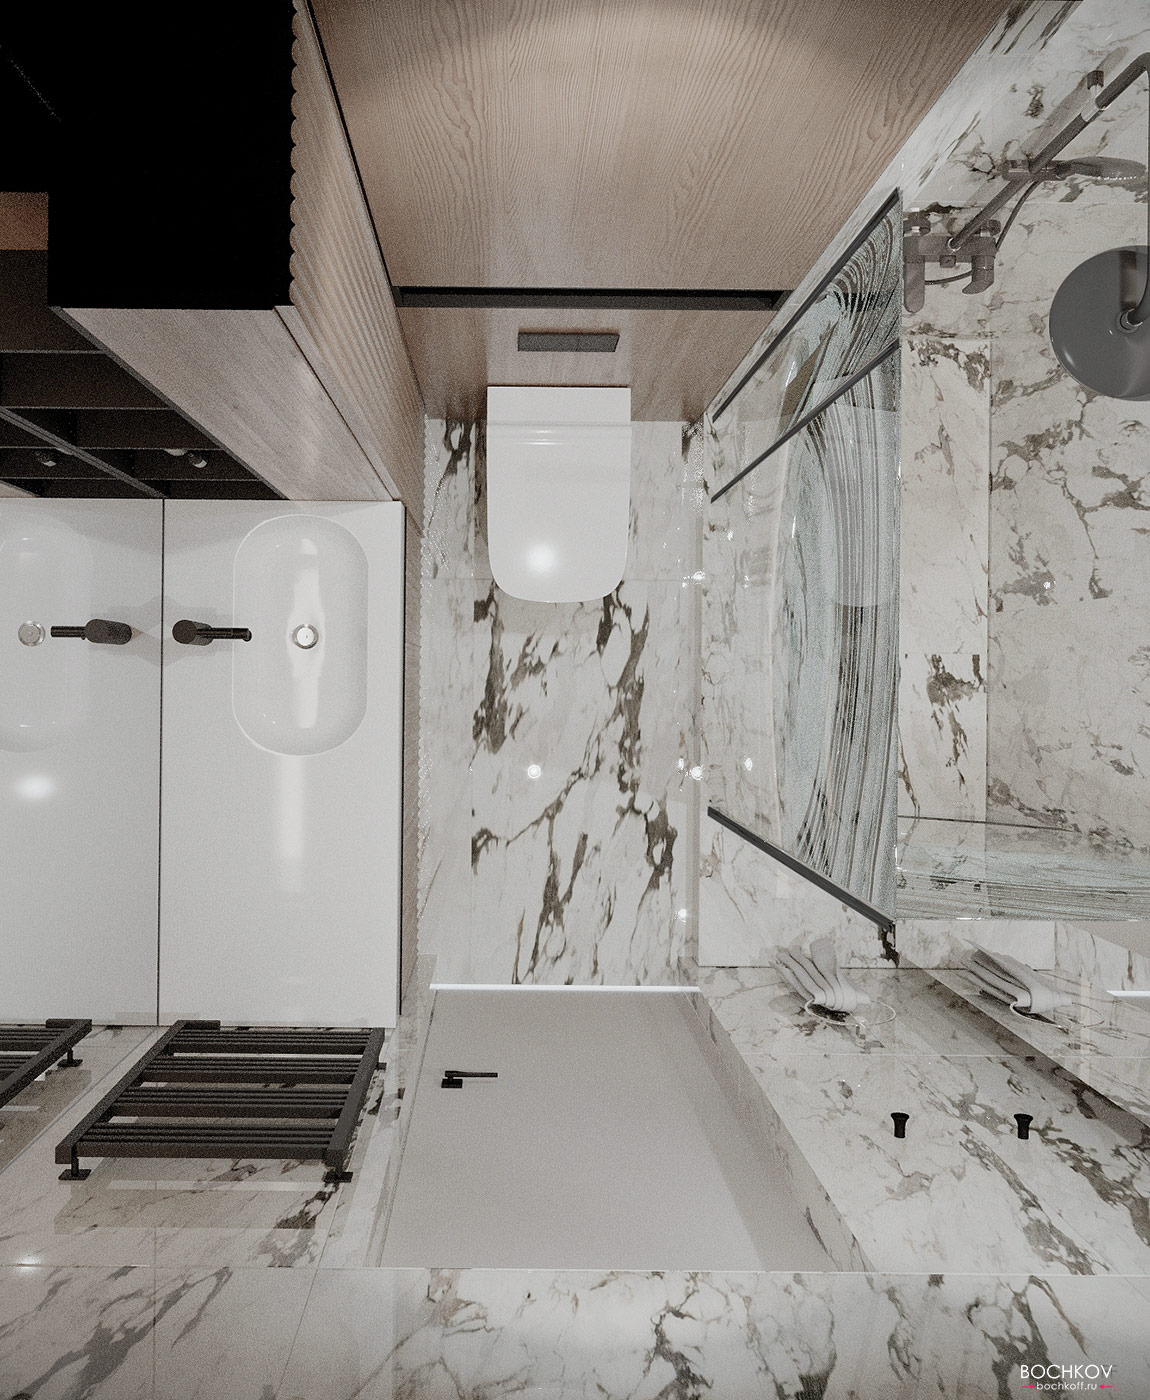 Ванная комната вид сверху, дизайн проект квартиры Москва SLuda01